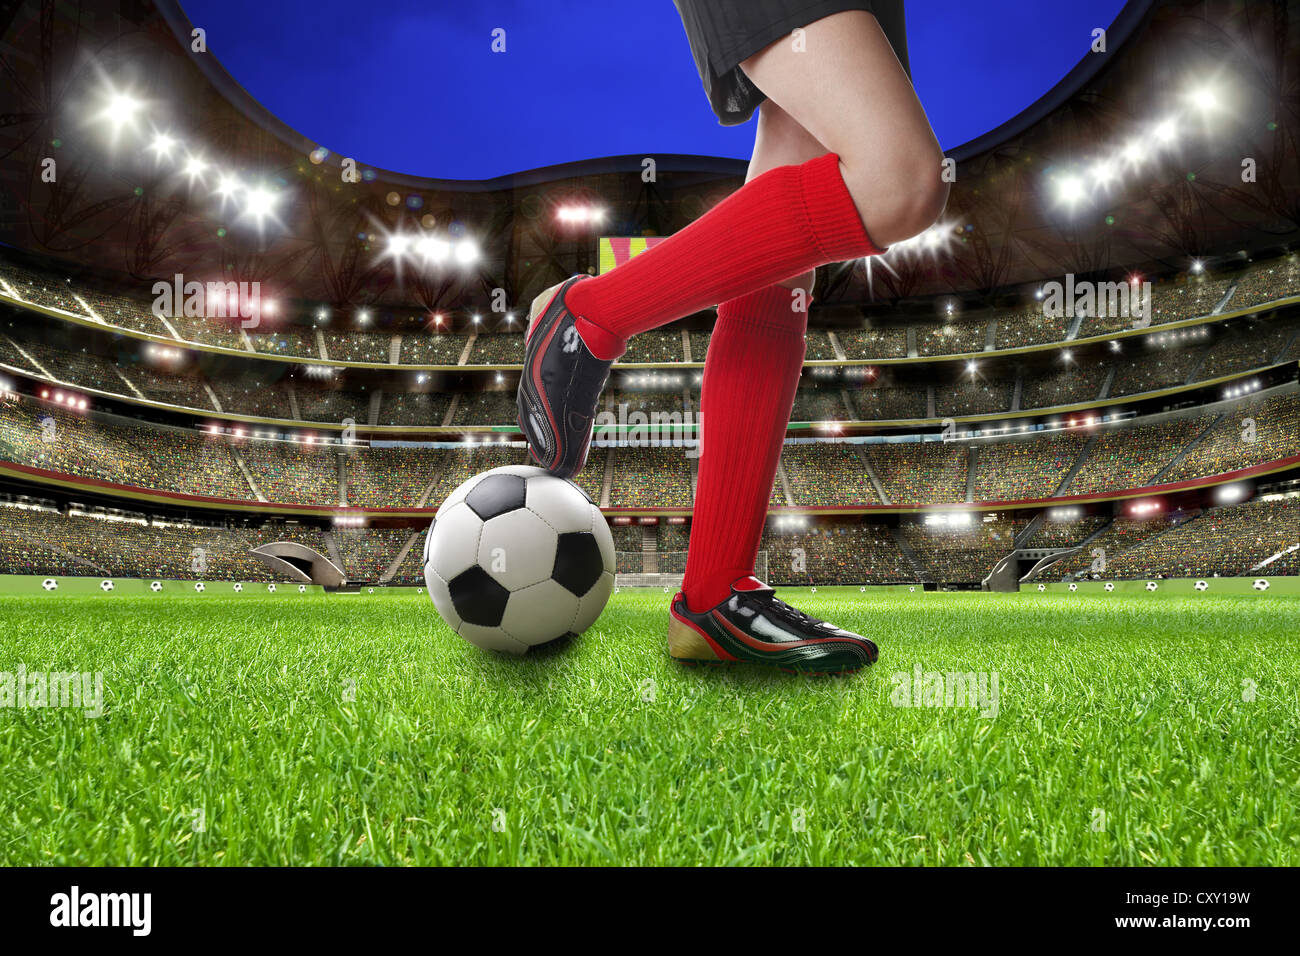 Beine der weiblichen Fußballer auf einem Fußball im Fußballstadion, Abbildung Stockfoto